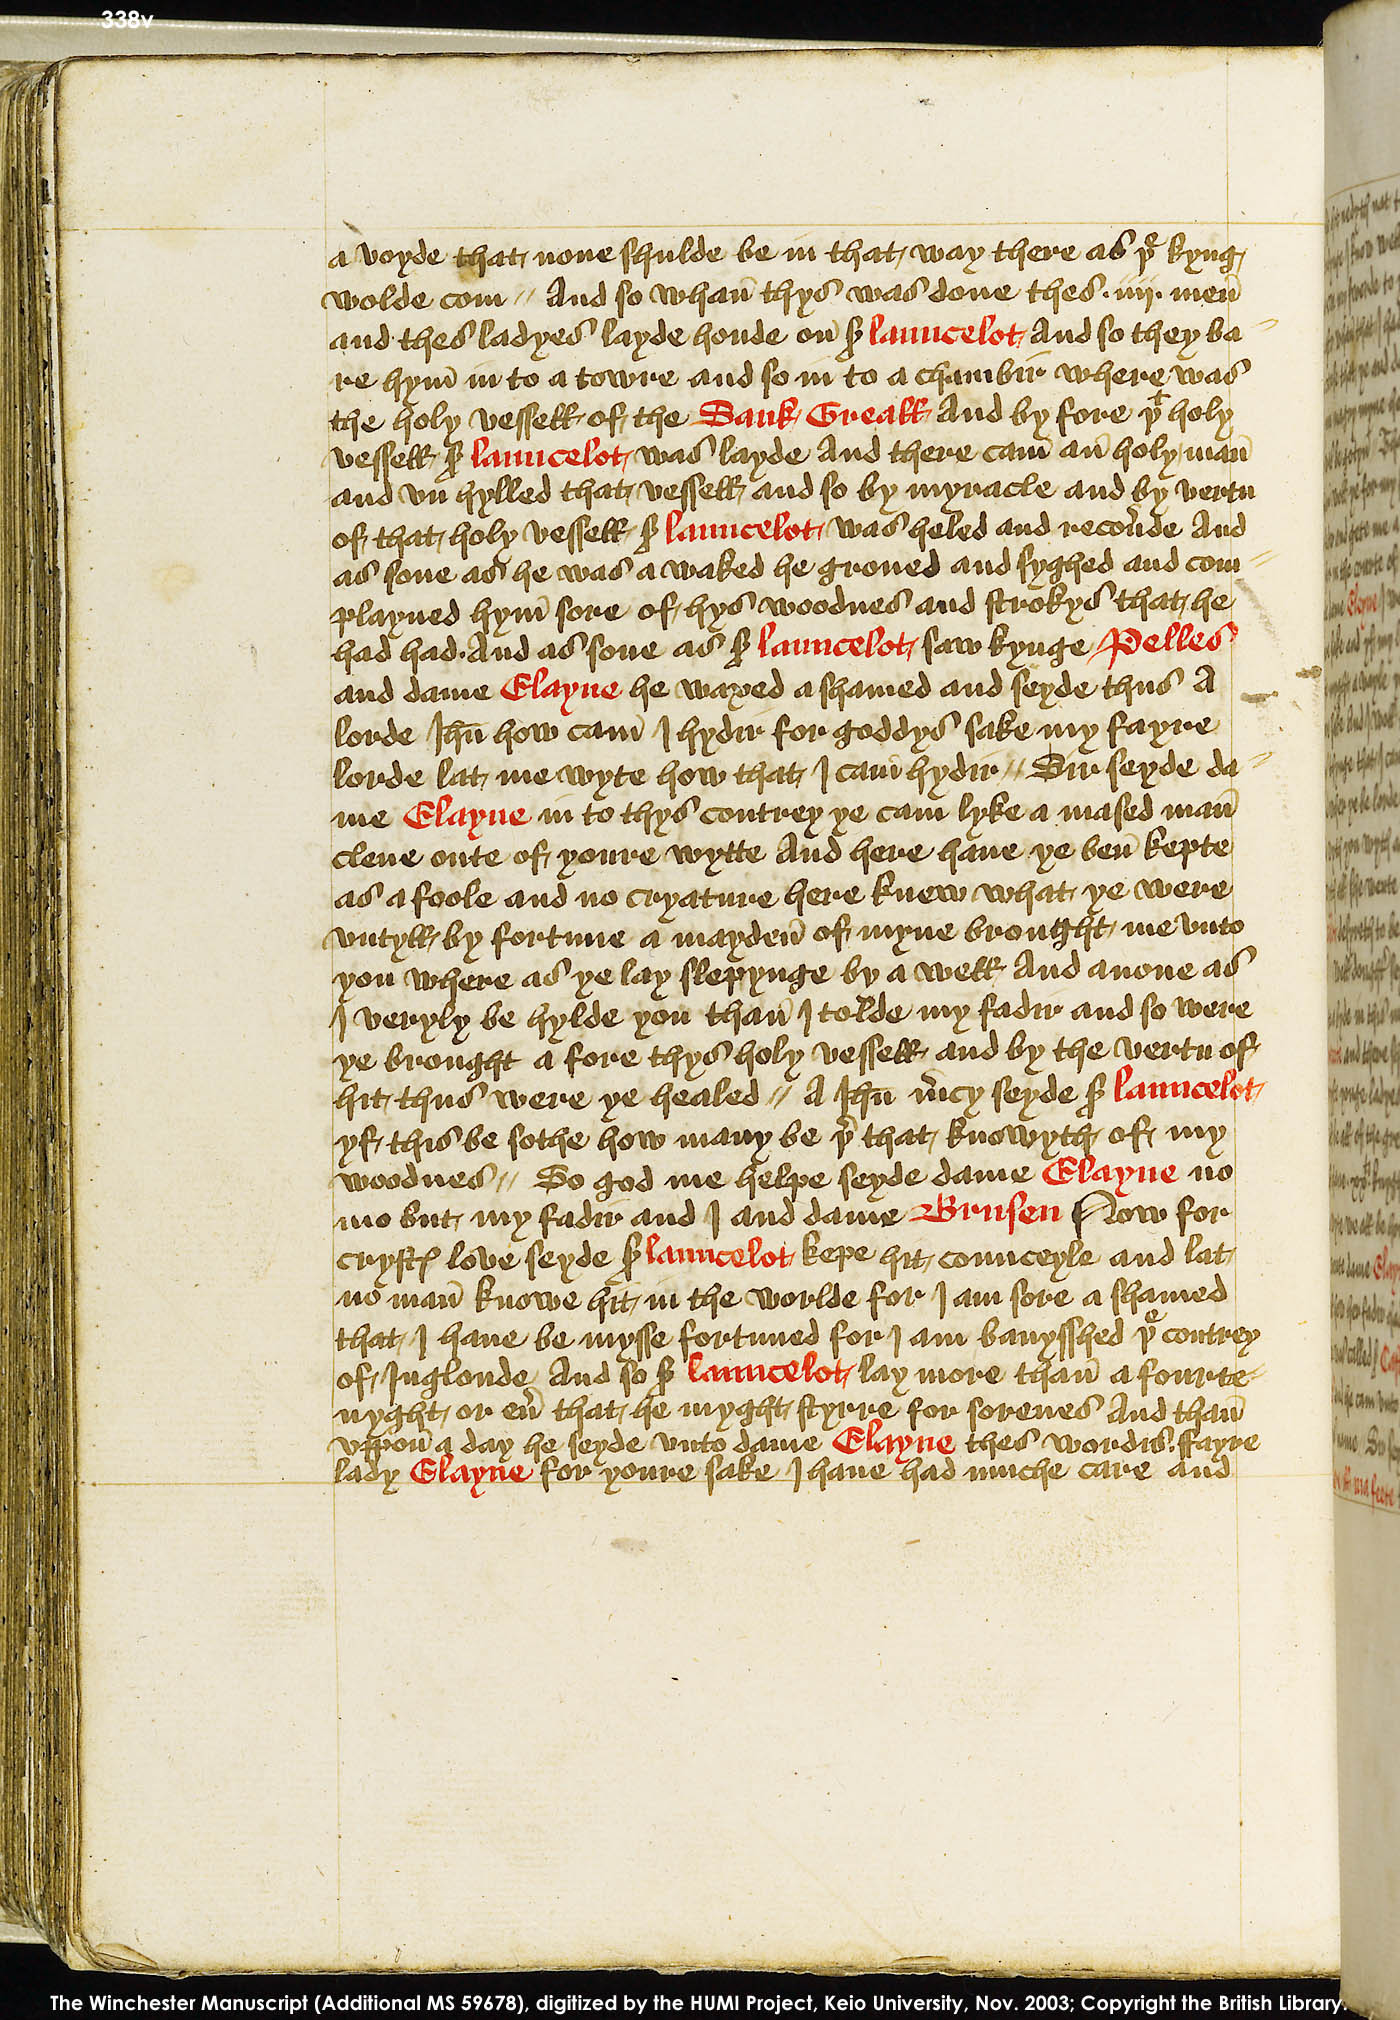 Folio 338v